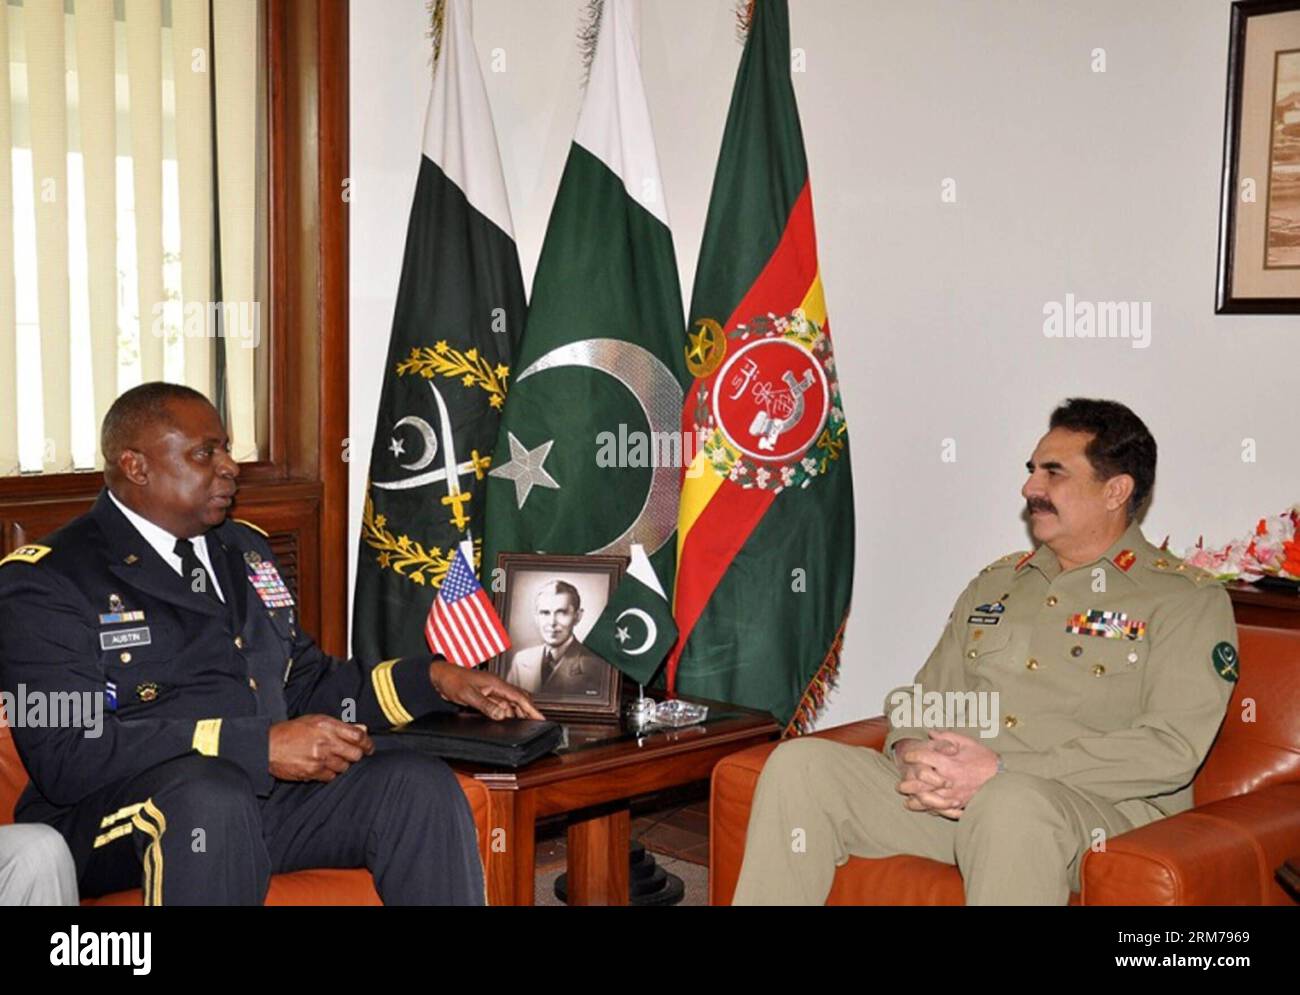 (140219) -- RAWALPINDI, 19 février 2014 (Xinhua) -- une photo publiée par les relations publiques inter-services (ISPR) des Forces armées pakistanaises montre que le commandant du Commandement central des États-Unis, le général Lloyd J. Austin III (L), rencontre le chef de l'armée pakistanaise, le général Raheel Sharif, à Rawalpindi, Pakistan, le 19 février 2014. Le commandant du Commandement central des États-Unis, le général Lloyd J. Austin III, a rencontré mercredi de hauts responsables militaires pakistanais et a discuté de questions liées à la situation de la sécurité régionale, en mettant particulièrement l'accent sur l'Afghanistan , a déclaré l'armée pakistanaise. (XINHUA/ISPR)(HY) PAKISTAN-RAWALPINDI-US-MILITARY-LEADER Banque D'Images